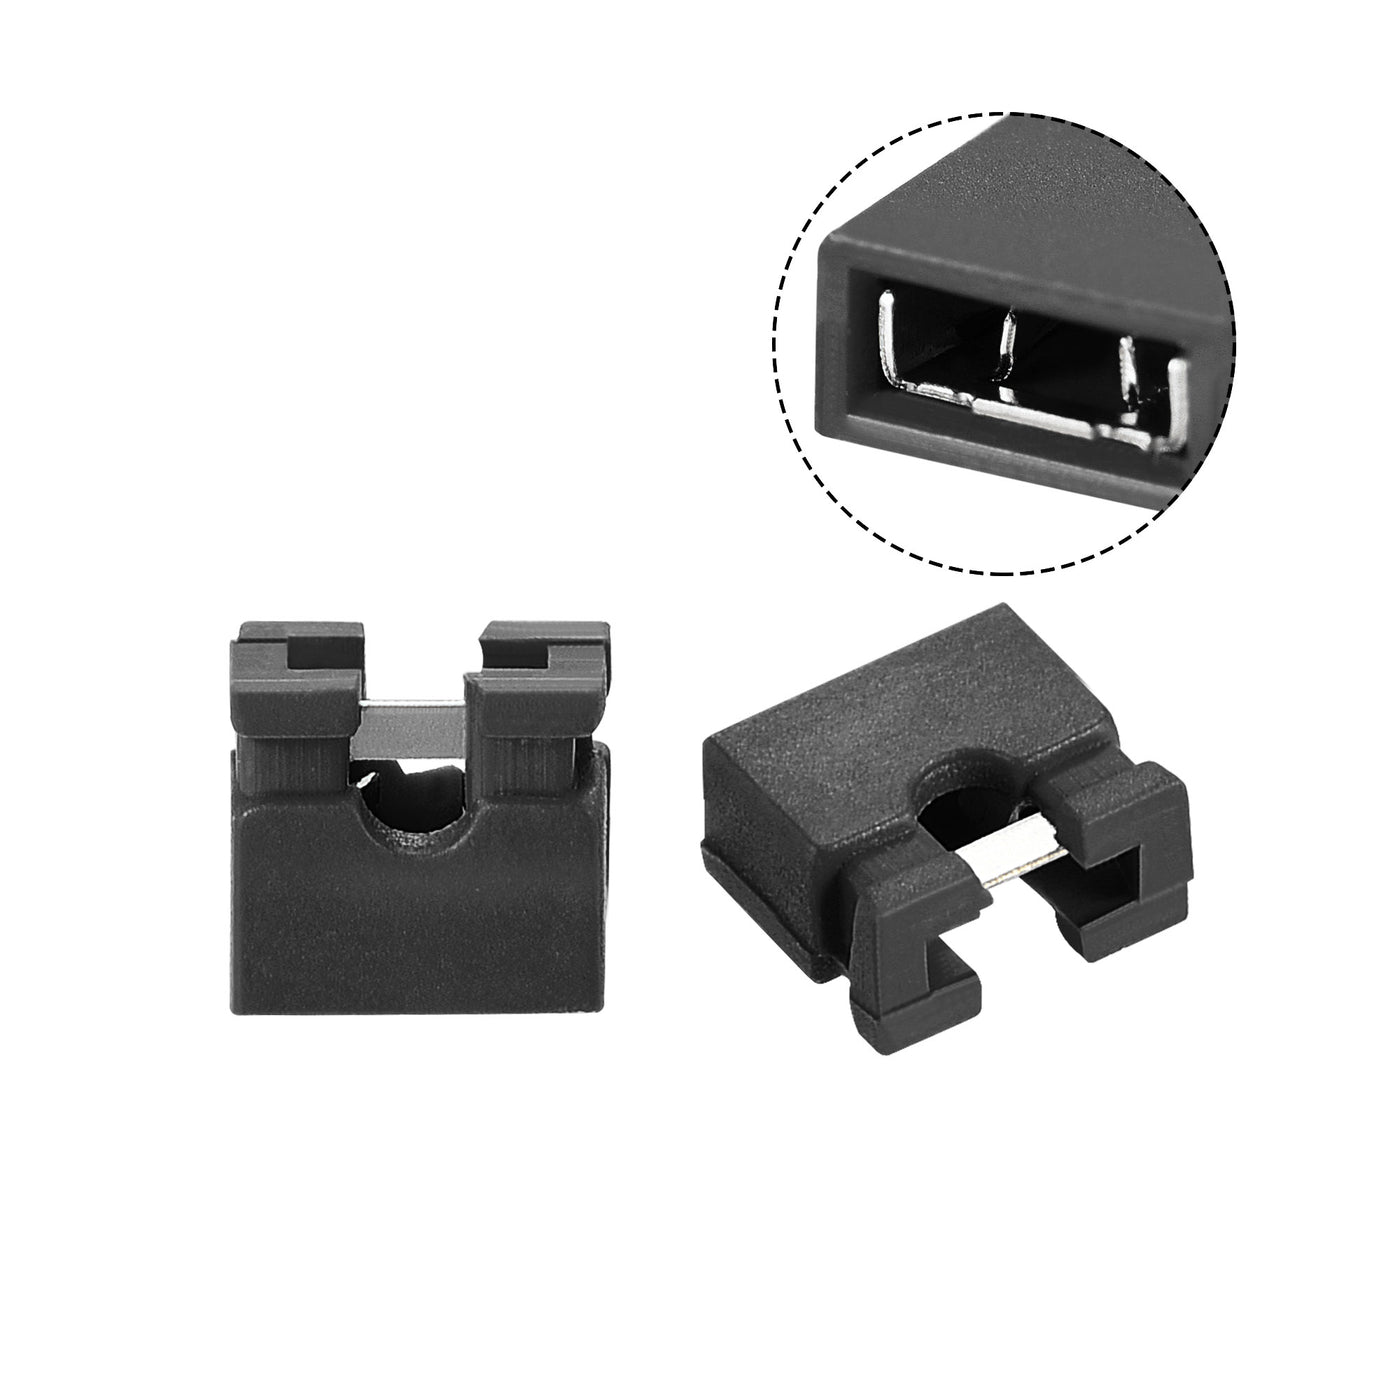 uxcell Uxcell 100pcs 2mm Standard Pin Header Jumper Cap Short Circuit Connection Cap Mini Micro Jumper Bridge Plug Black